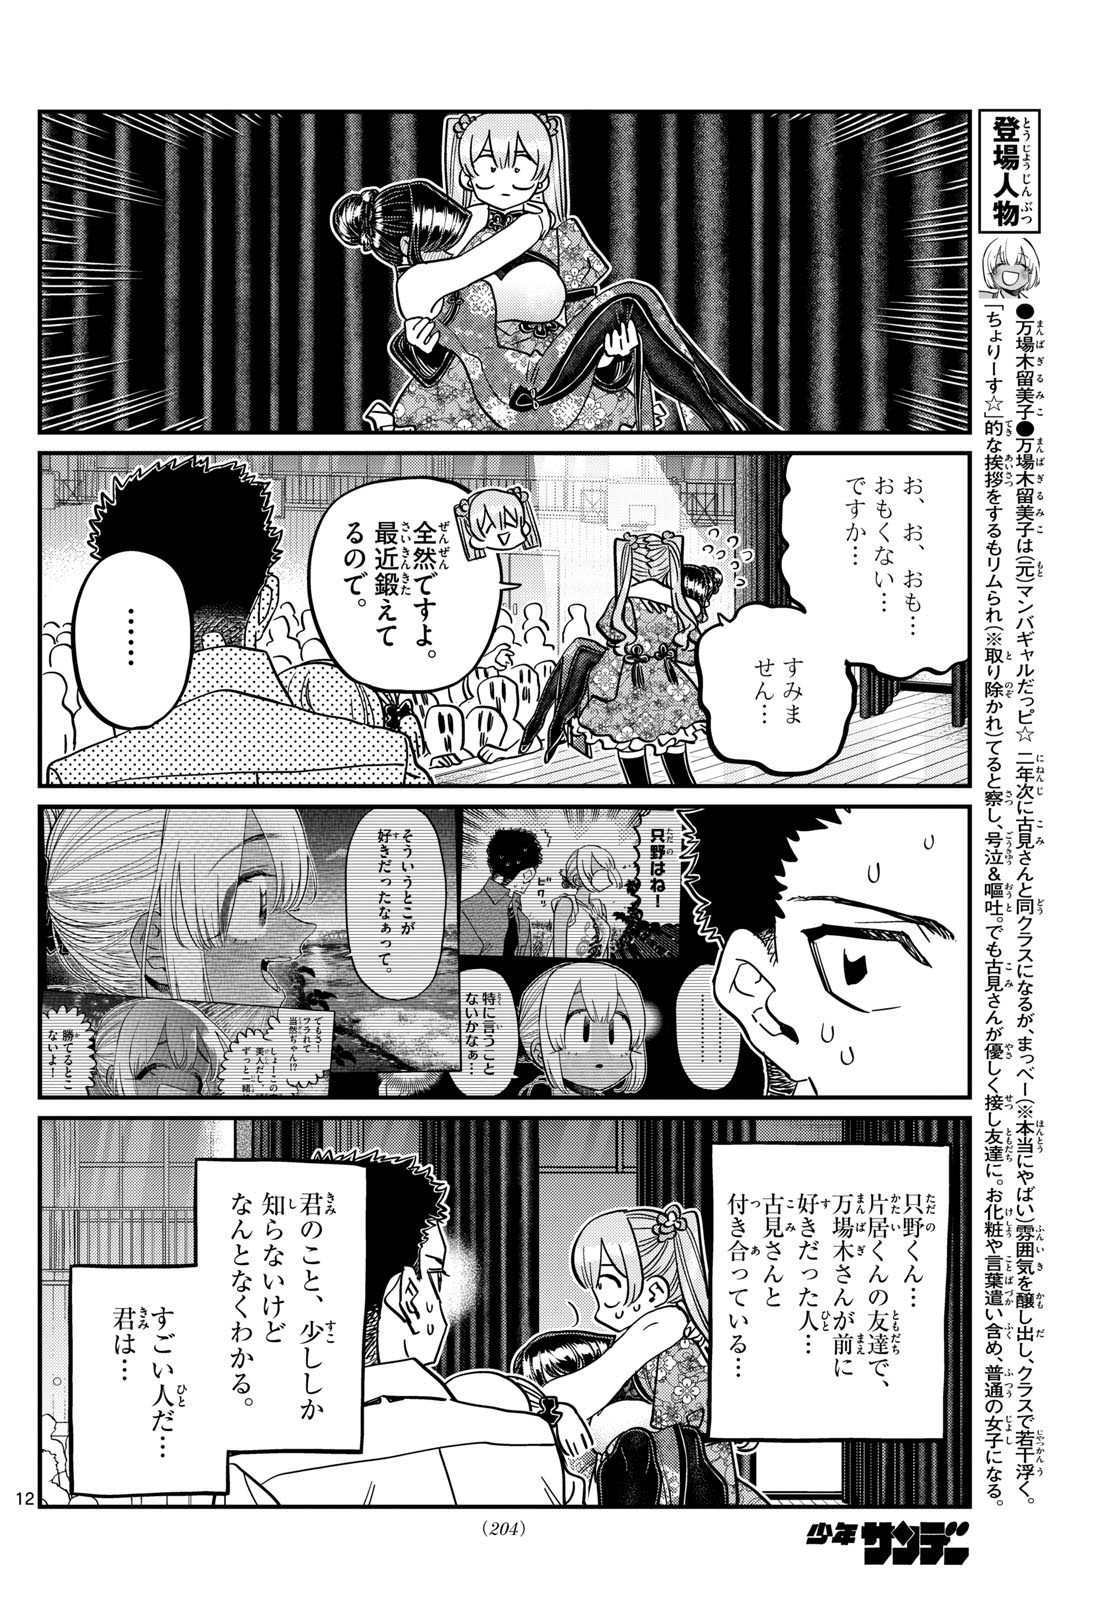 Komi-san wa Komyushou Desu - Chapter 457 - Page 12